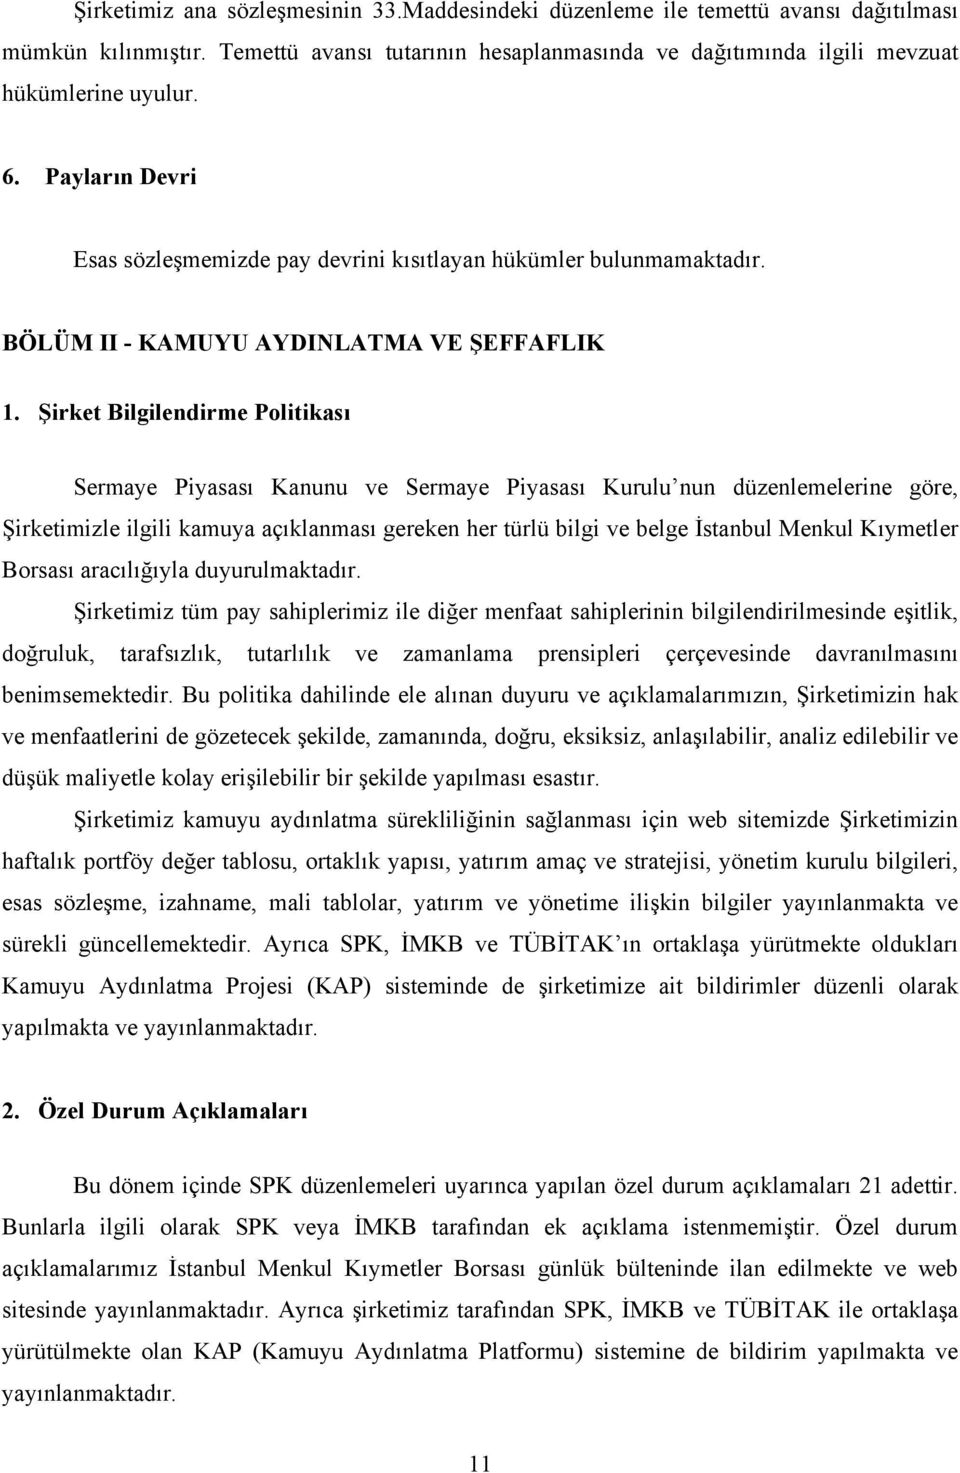 Şirket Bilgilendirme Politikası Sermaye Piyasası Kanunu ve Sermaye Piyasası Kurulu nun düzenlemelerine göre, Şirketimizle ilgili kamuya açıklanması gereken her türlü bilgi ve belge İstanbul Menkul